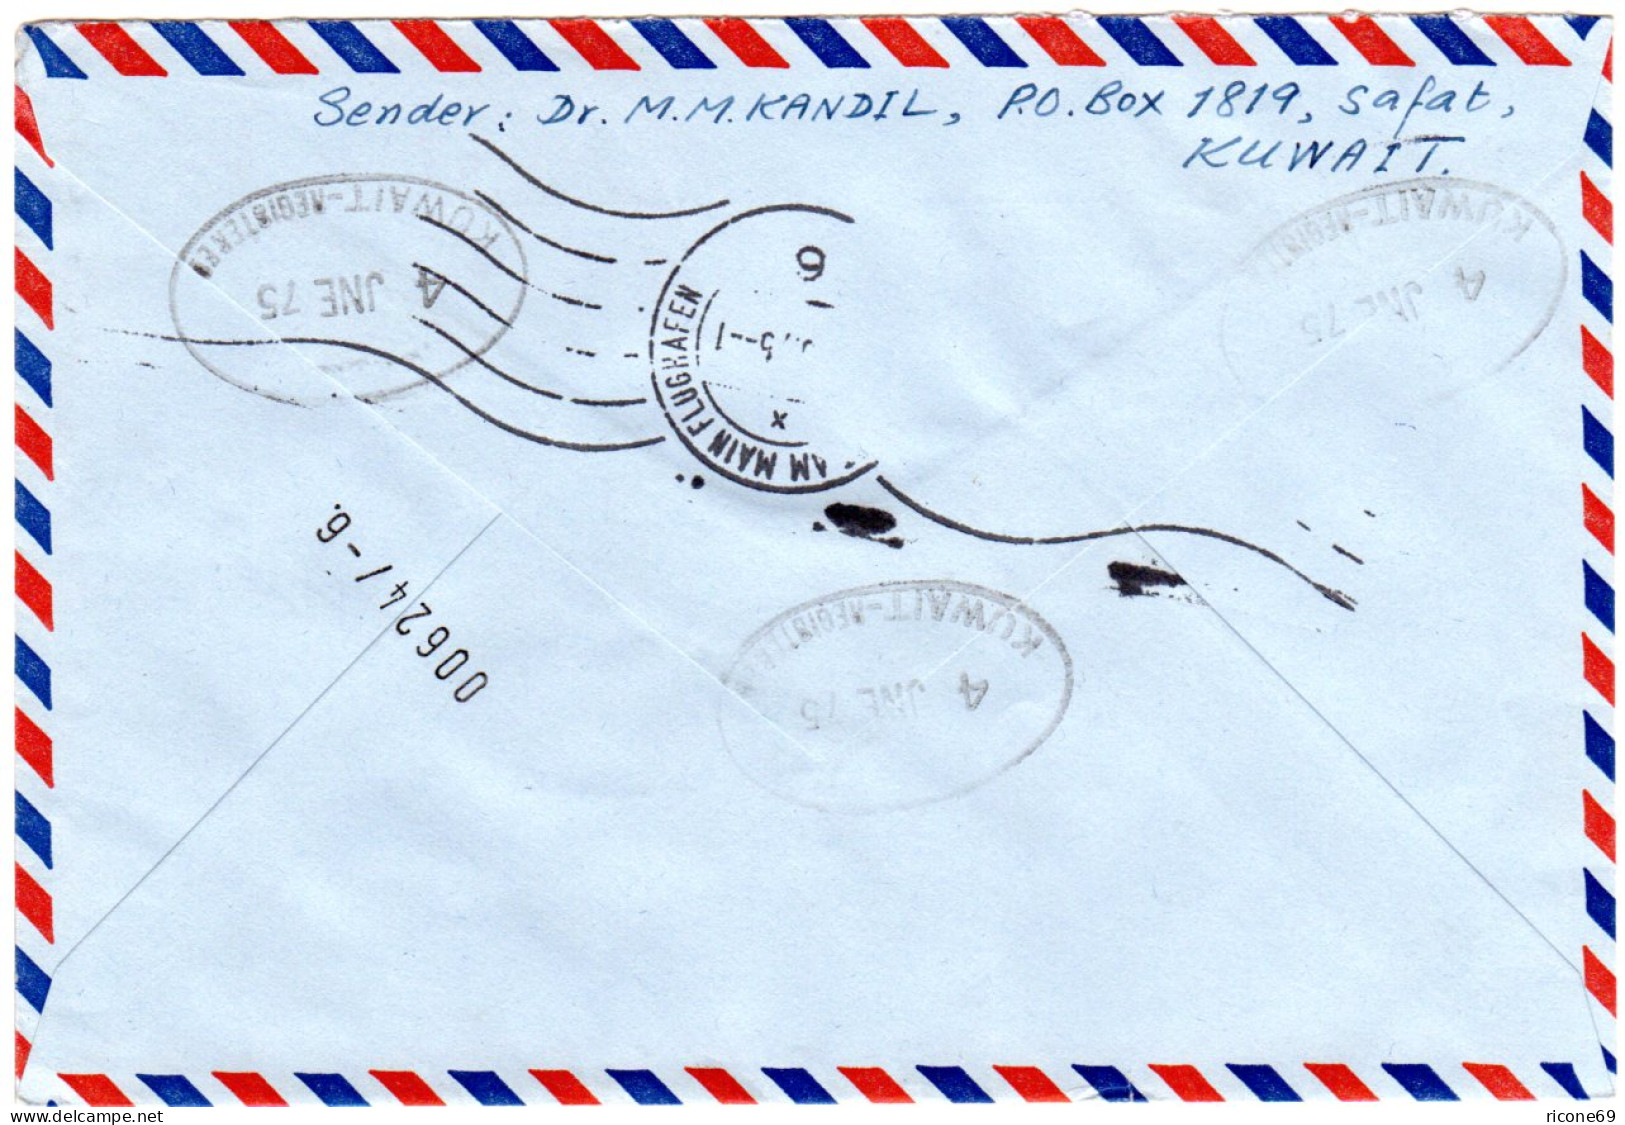 Kuwait 1975, 90+100 F.  Auf Luftpost Einschreiben Express Brief N. Deutschland. - Sonstige - Asien